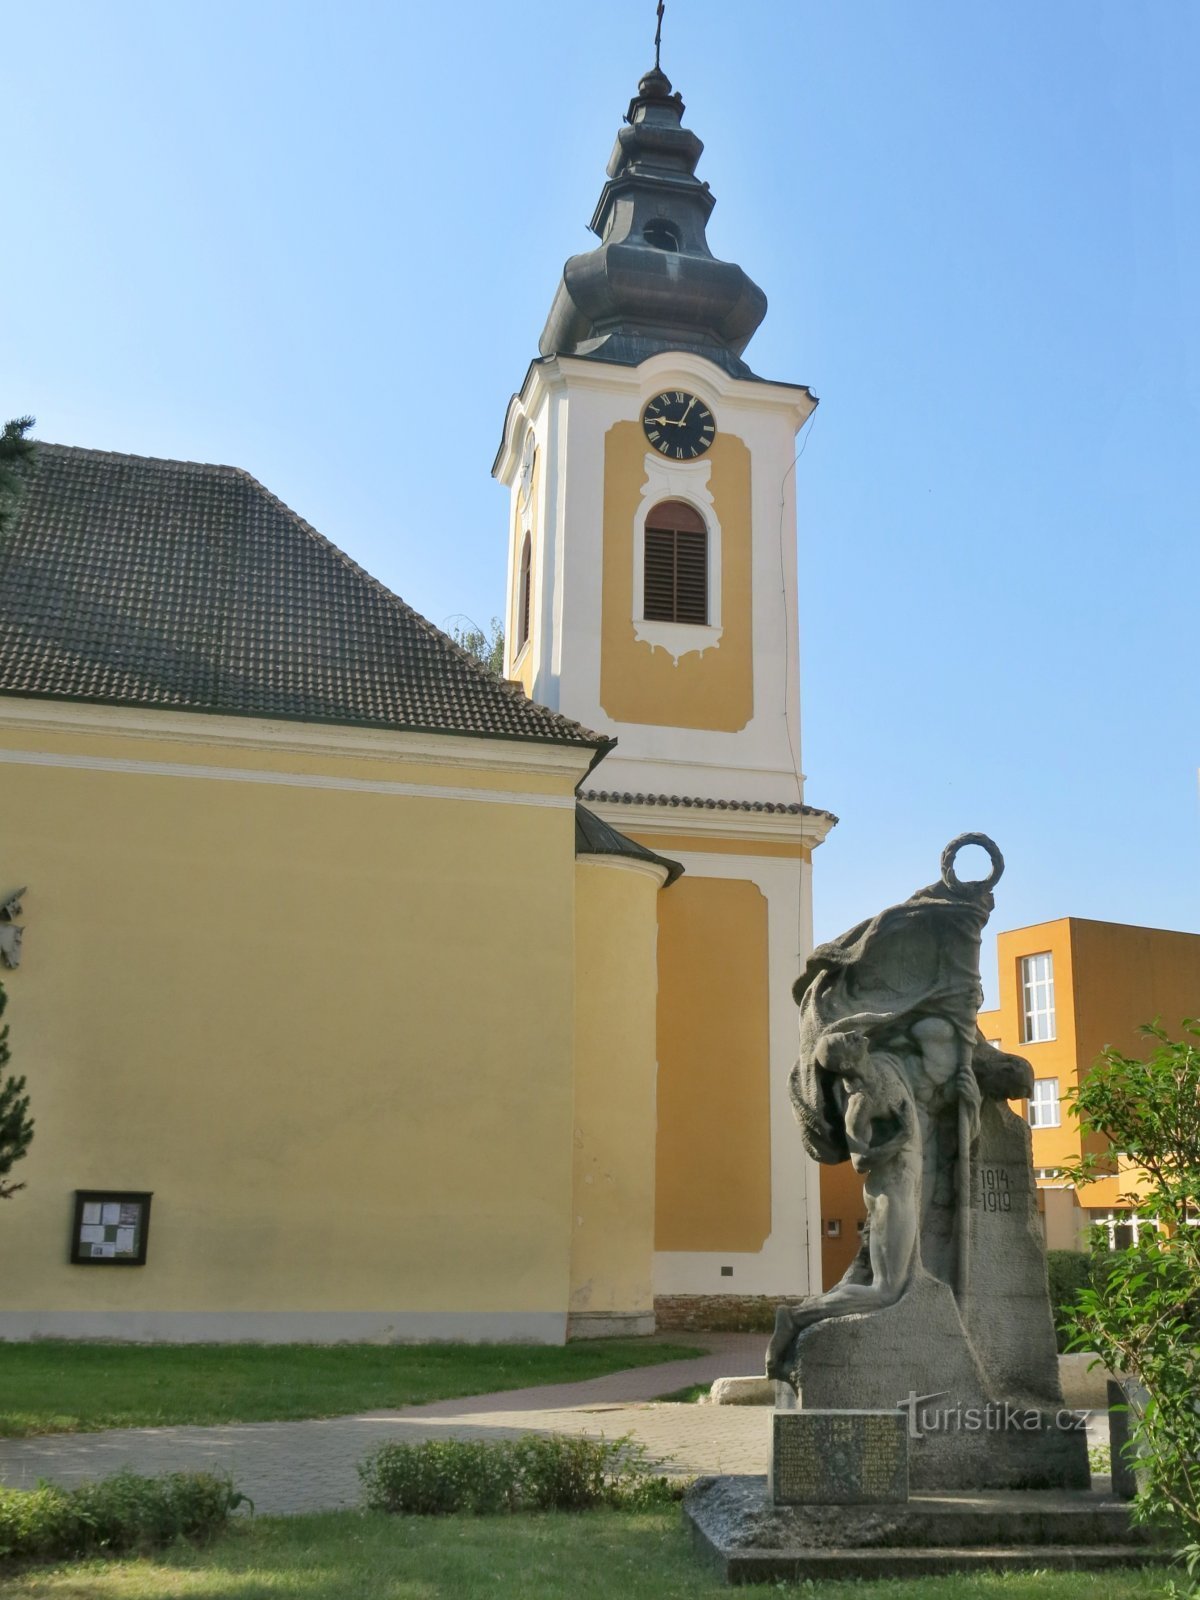 Planá nad Lužnicí - church of St. Wenceslas